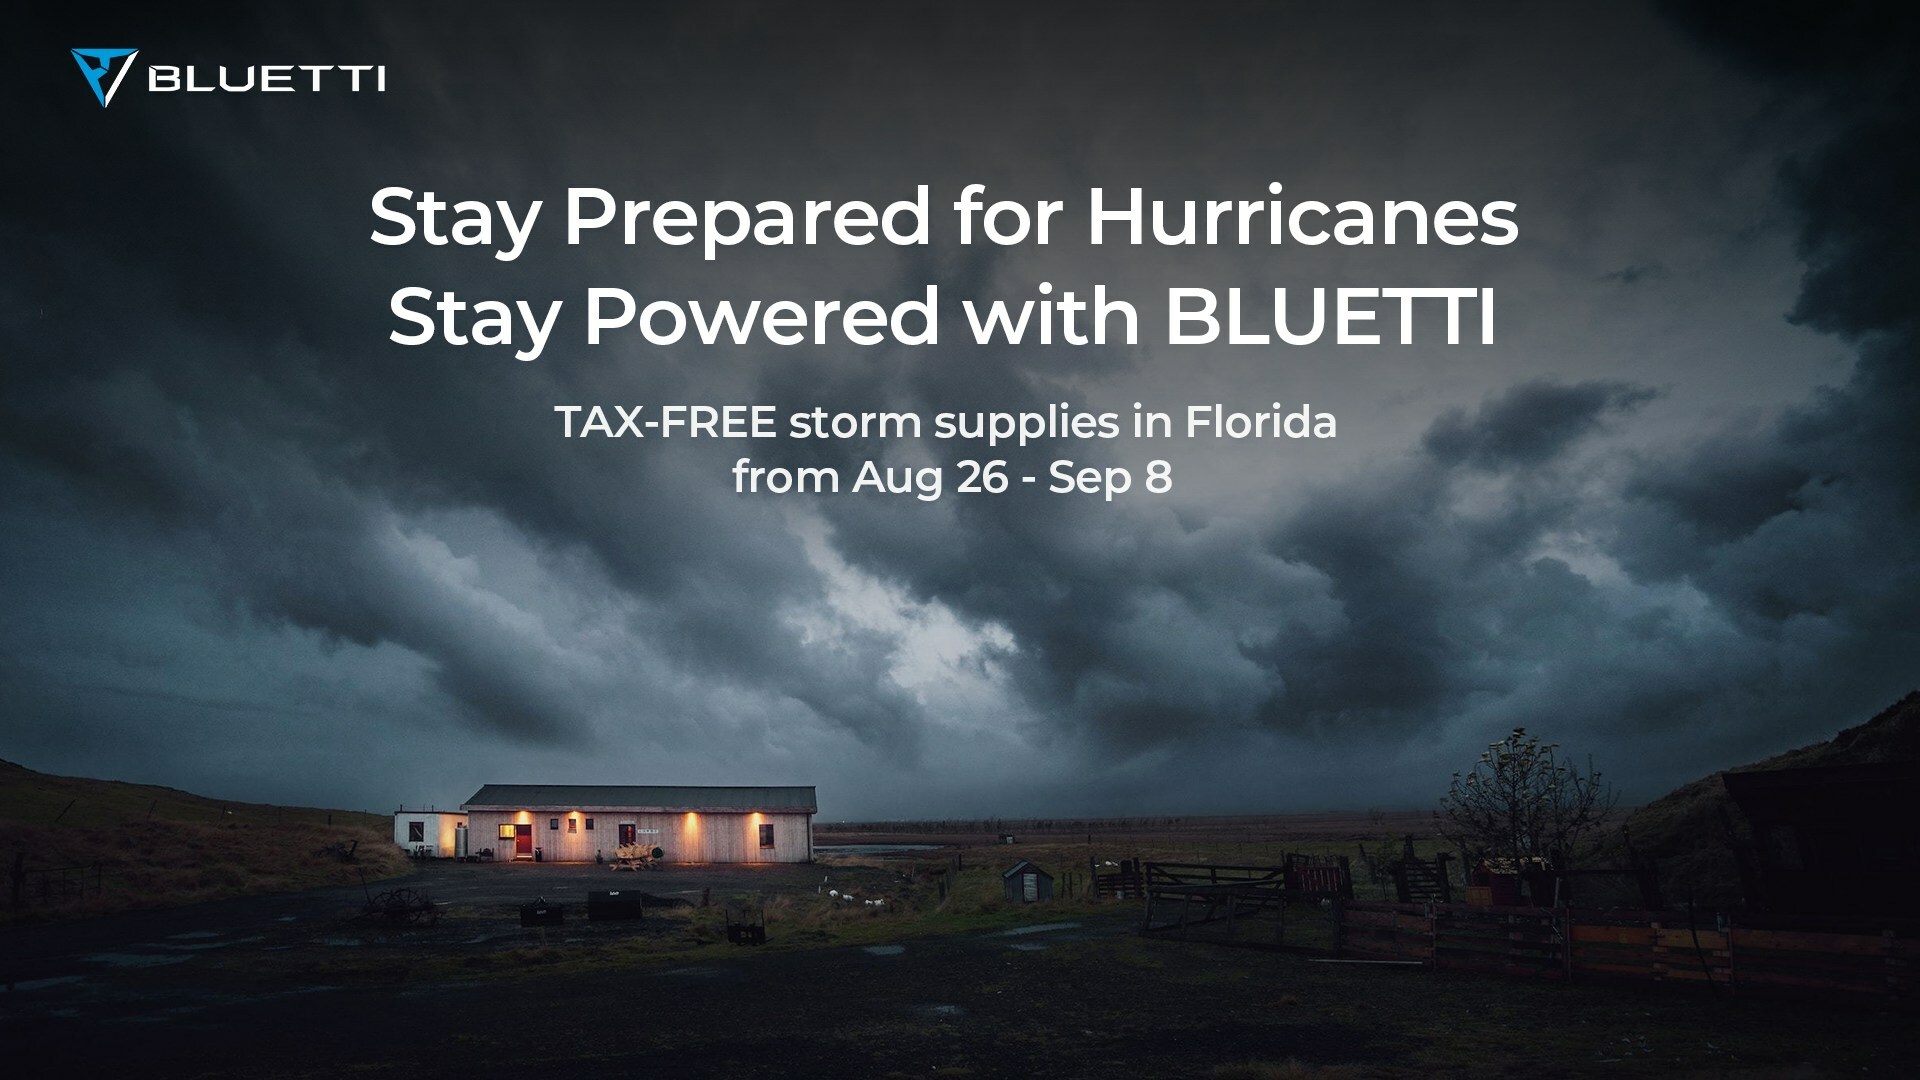 BLUETTI Provides Hurricane Preparedness Guidelines Amid Recent Florida Storm